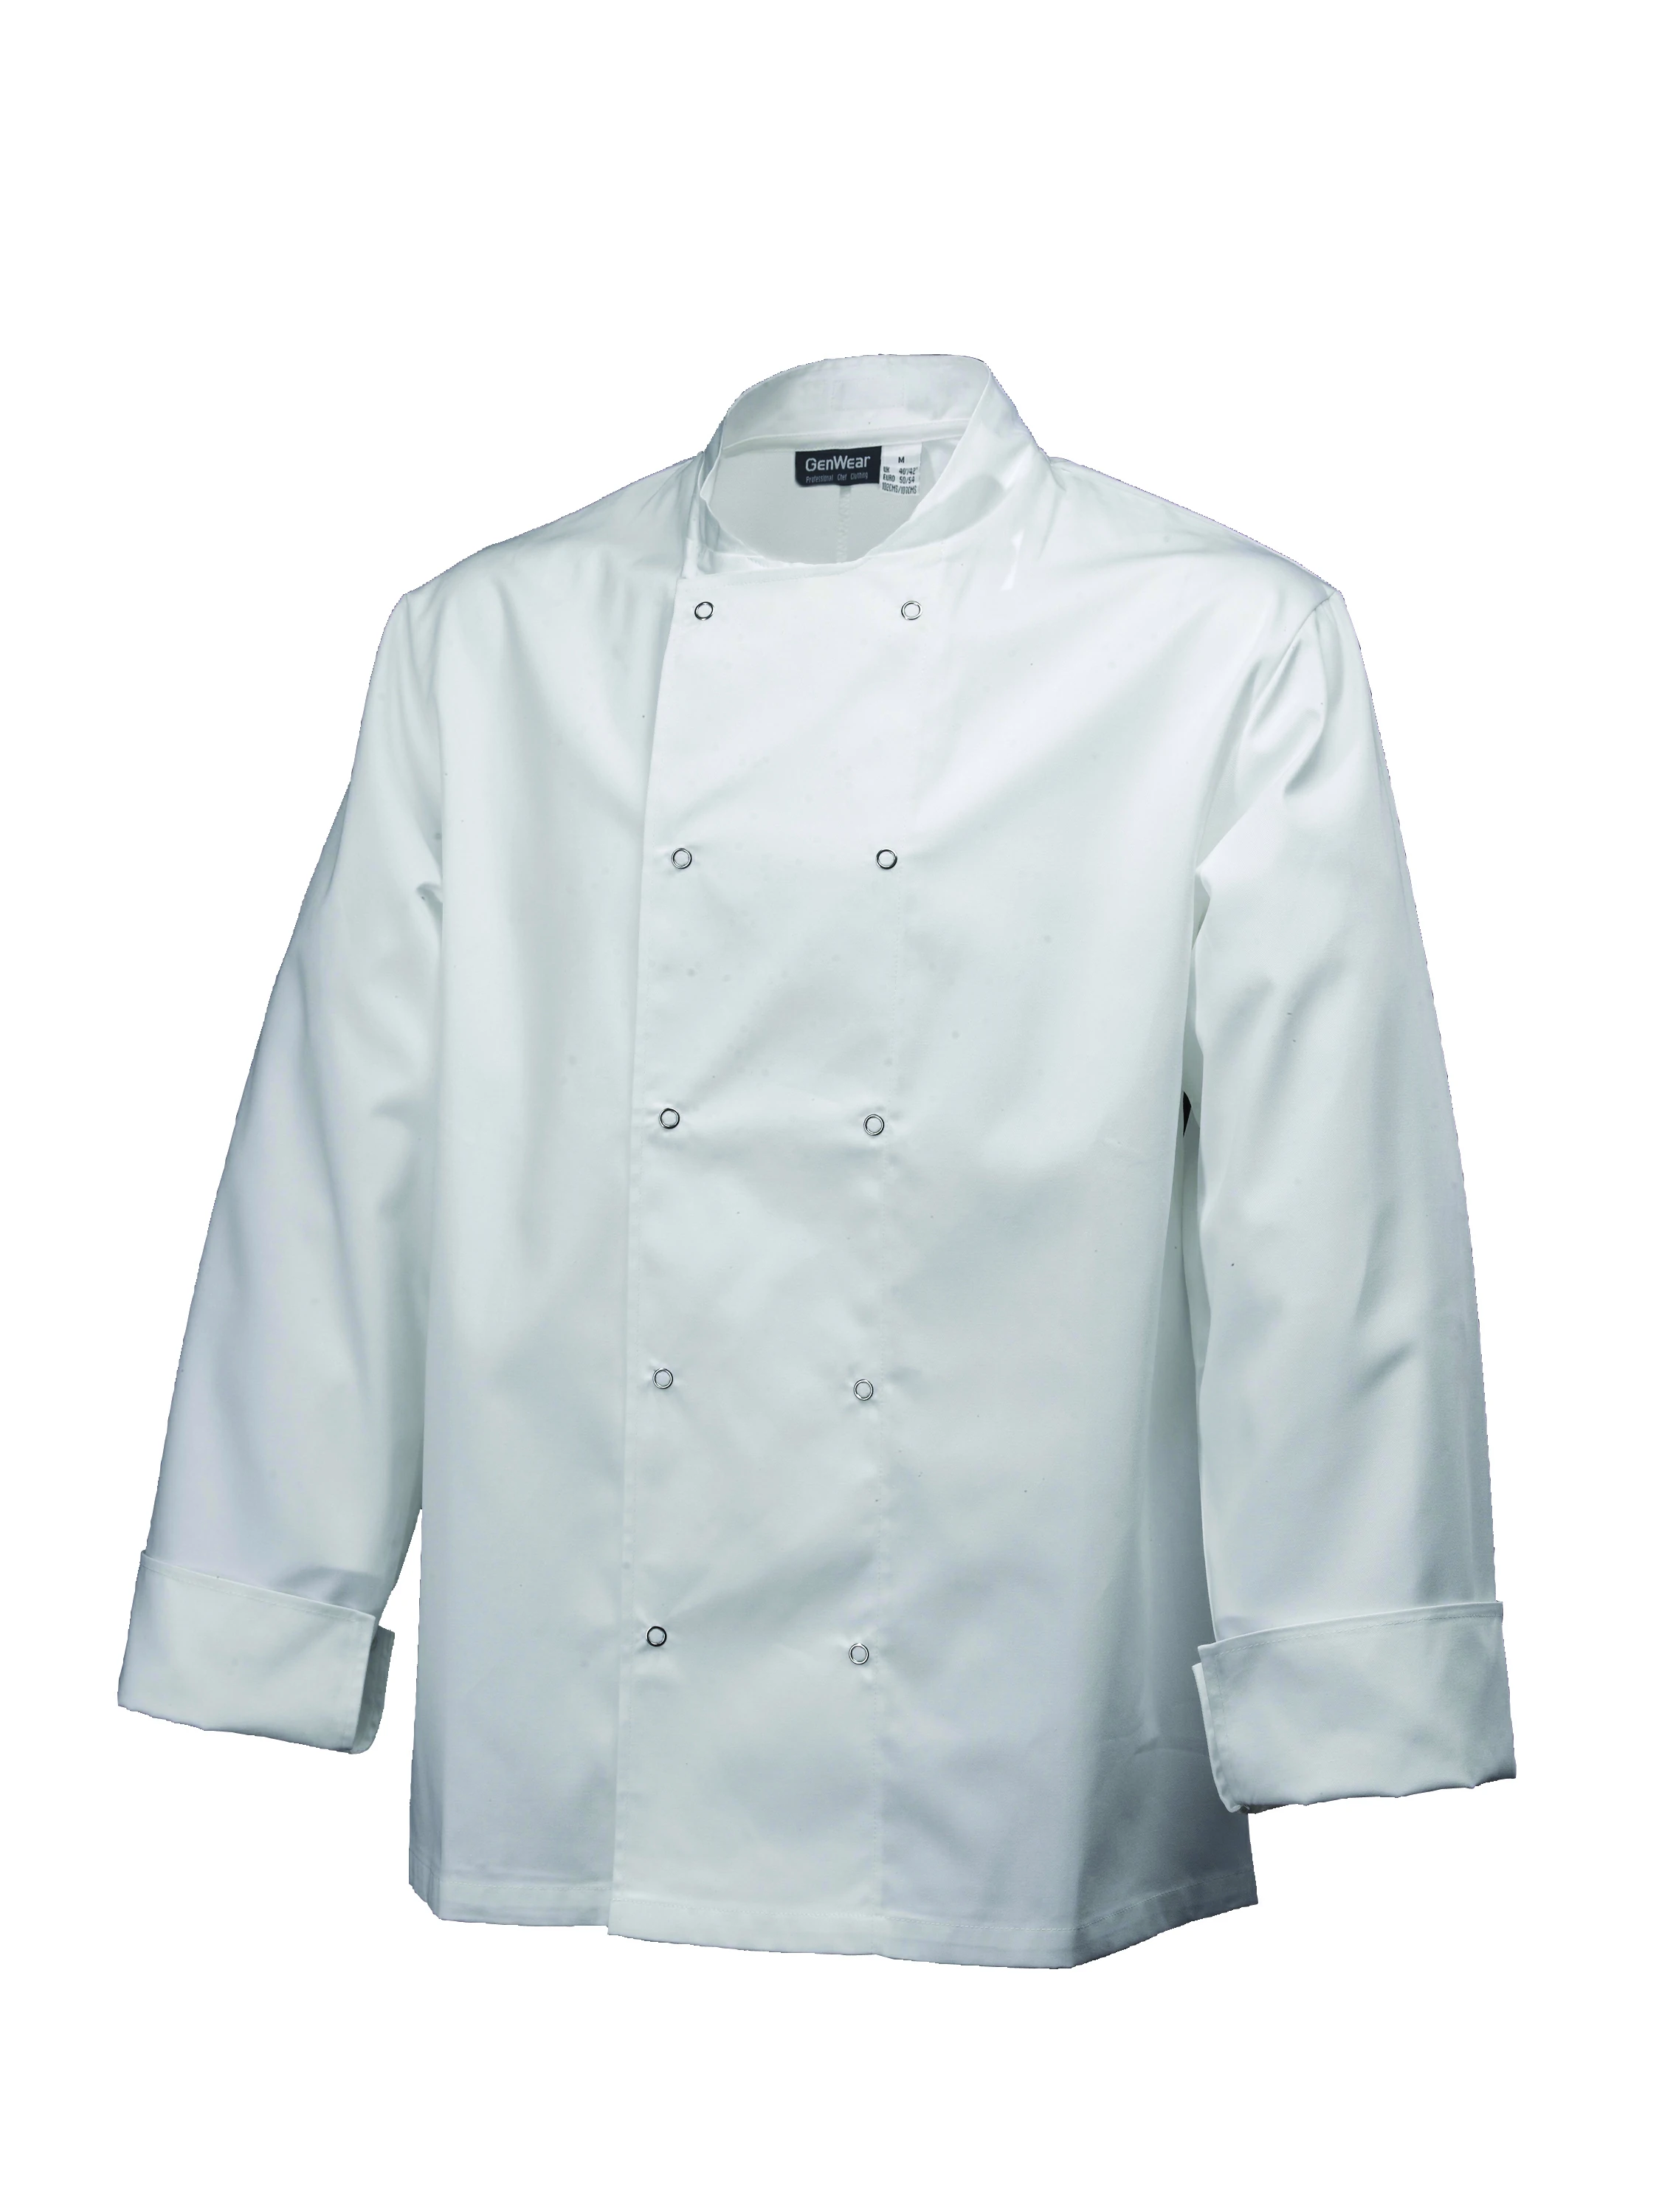 Basic Stud Jacket (Long Sleeve) White XXL Size